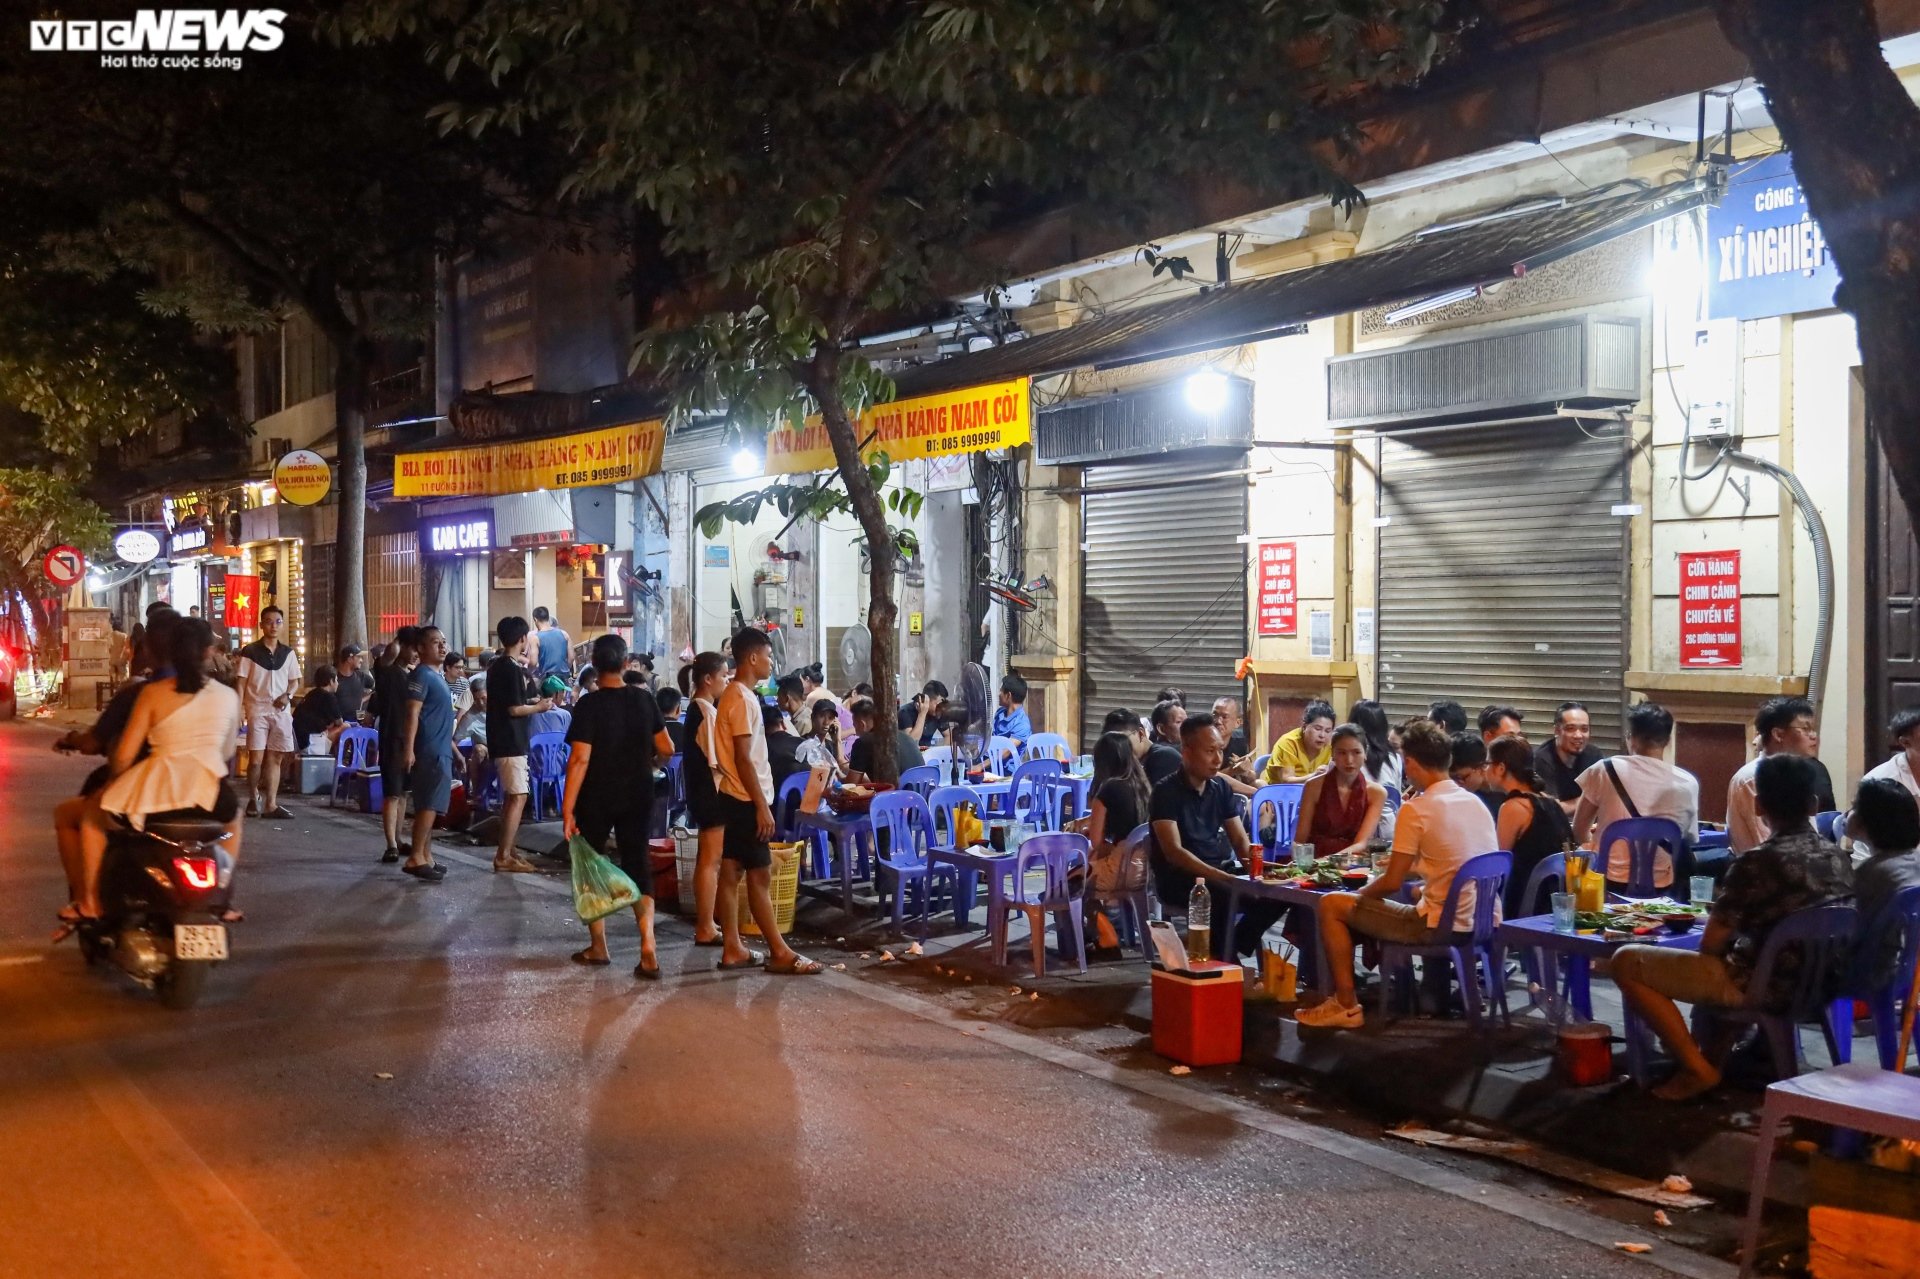 Hàng quán vỉa hè phố cổ Hà Nội chật kín khách dịp nghỉ lễ Quốc khánh - Ảnh 10.